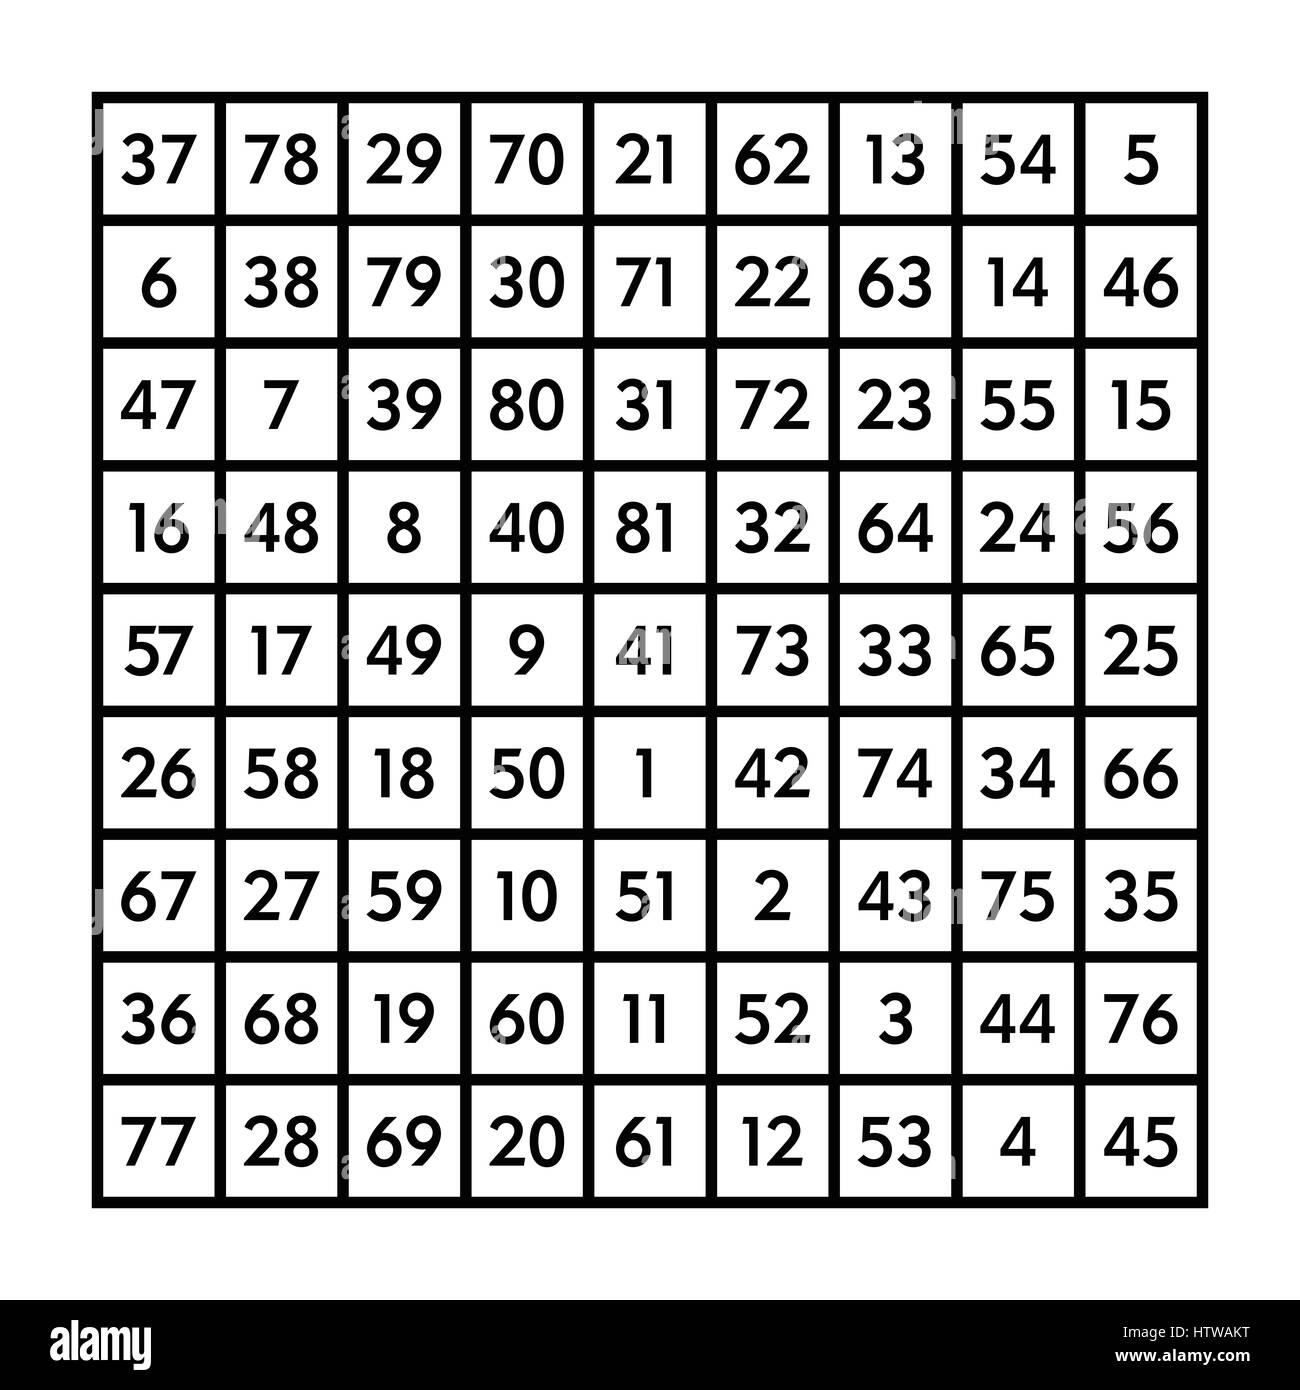 9 x 9 magisches Quadrat der Ordnung 9 und die astrologische Mond mit Magie konstante 369. Die Summe der Zahlen in jeder Zeile, Spalte oder Diagonal ist immer 369. Stockfoto